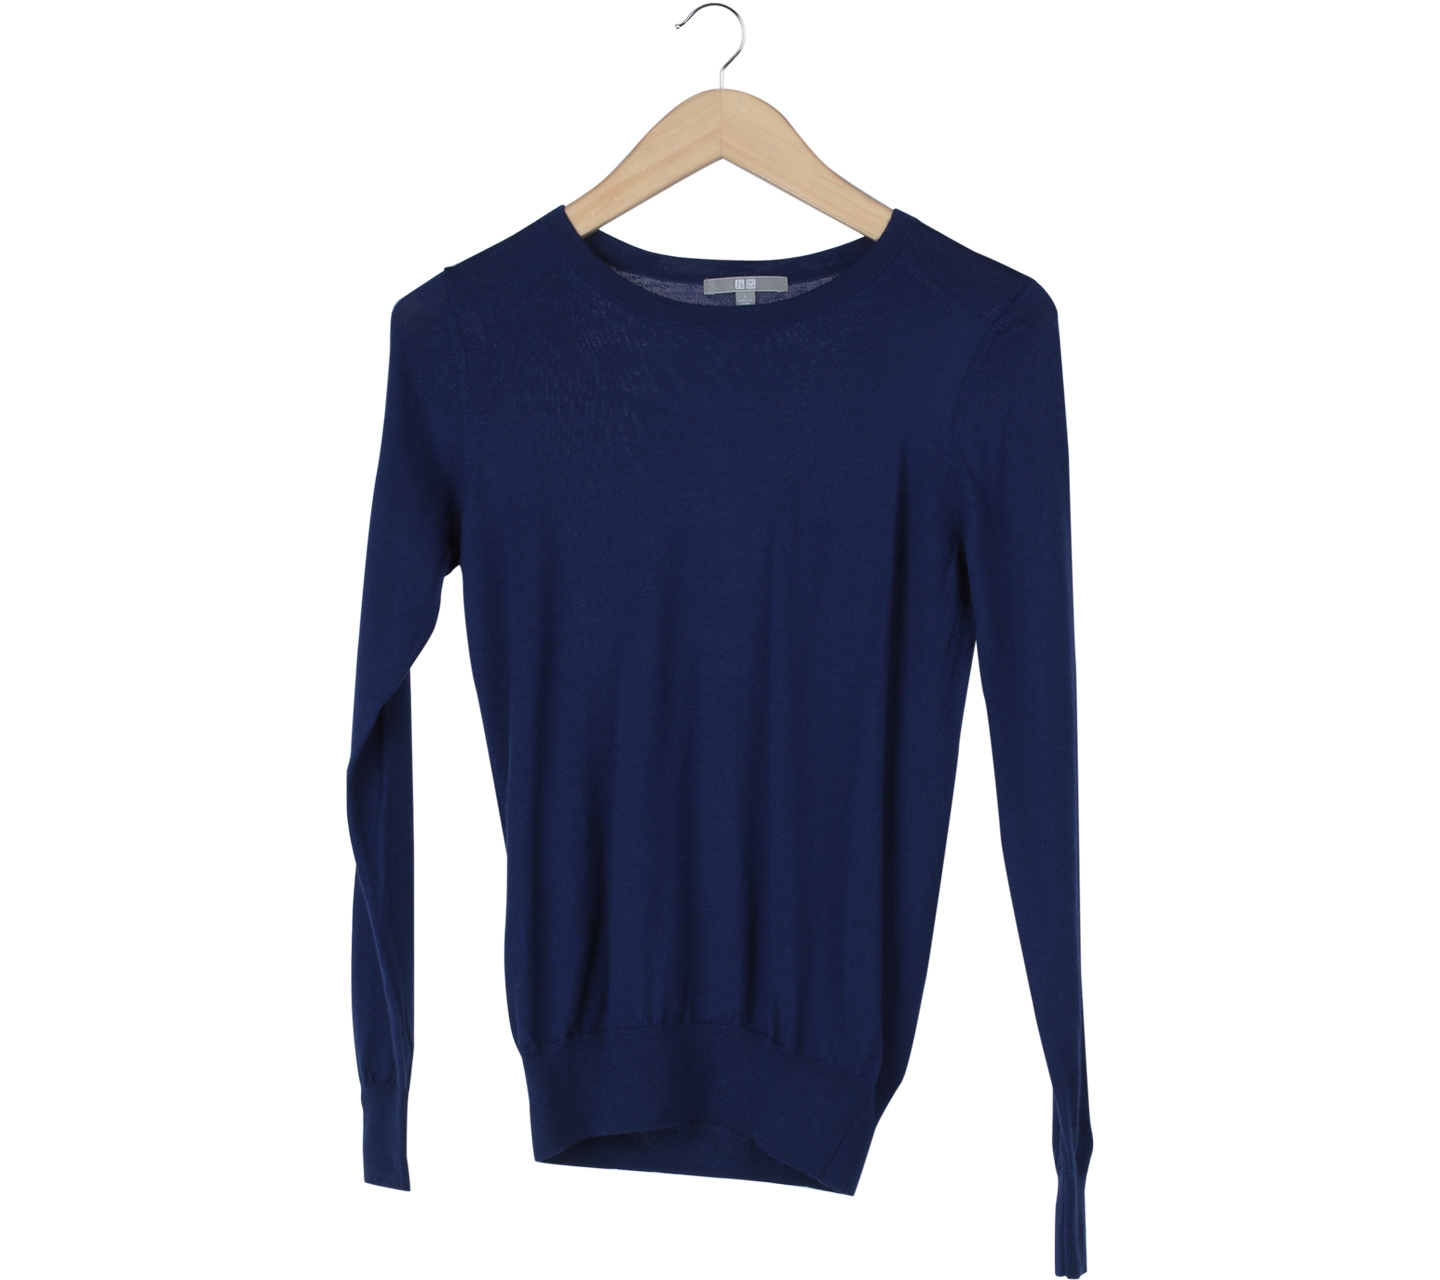 UNIQLO Blue Sweater